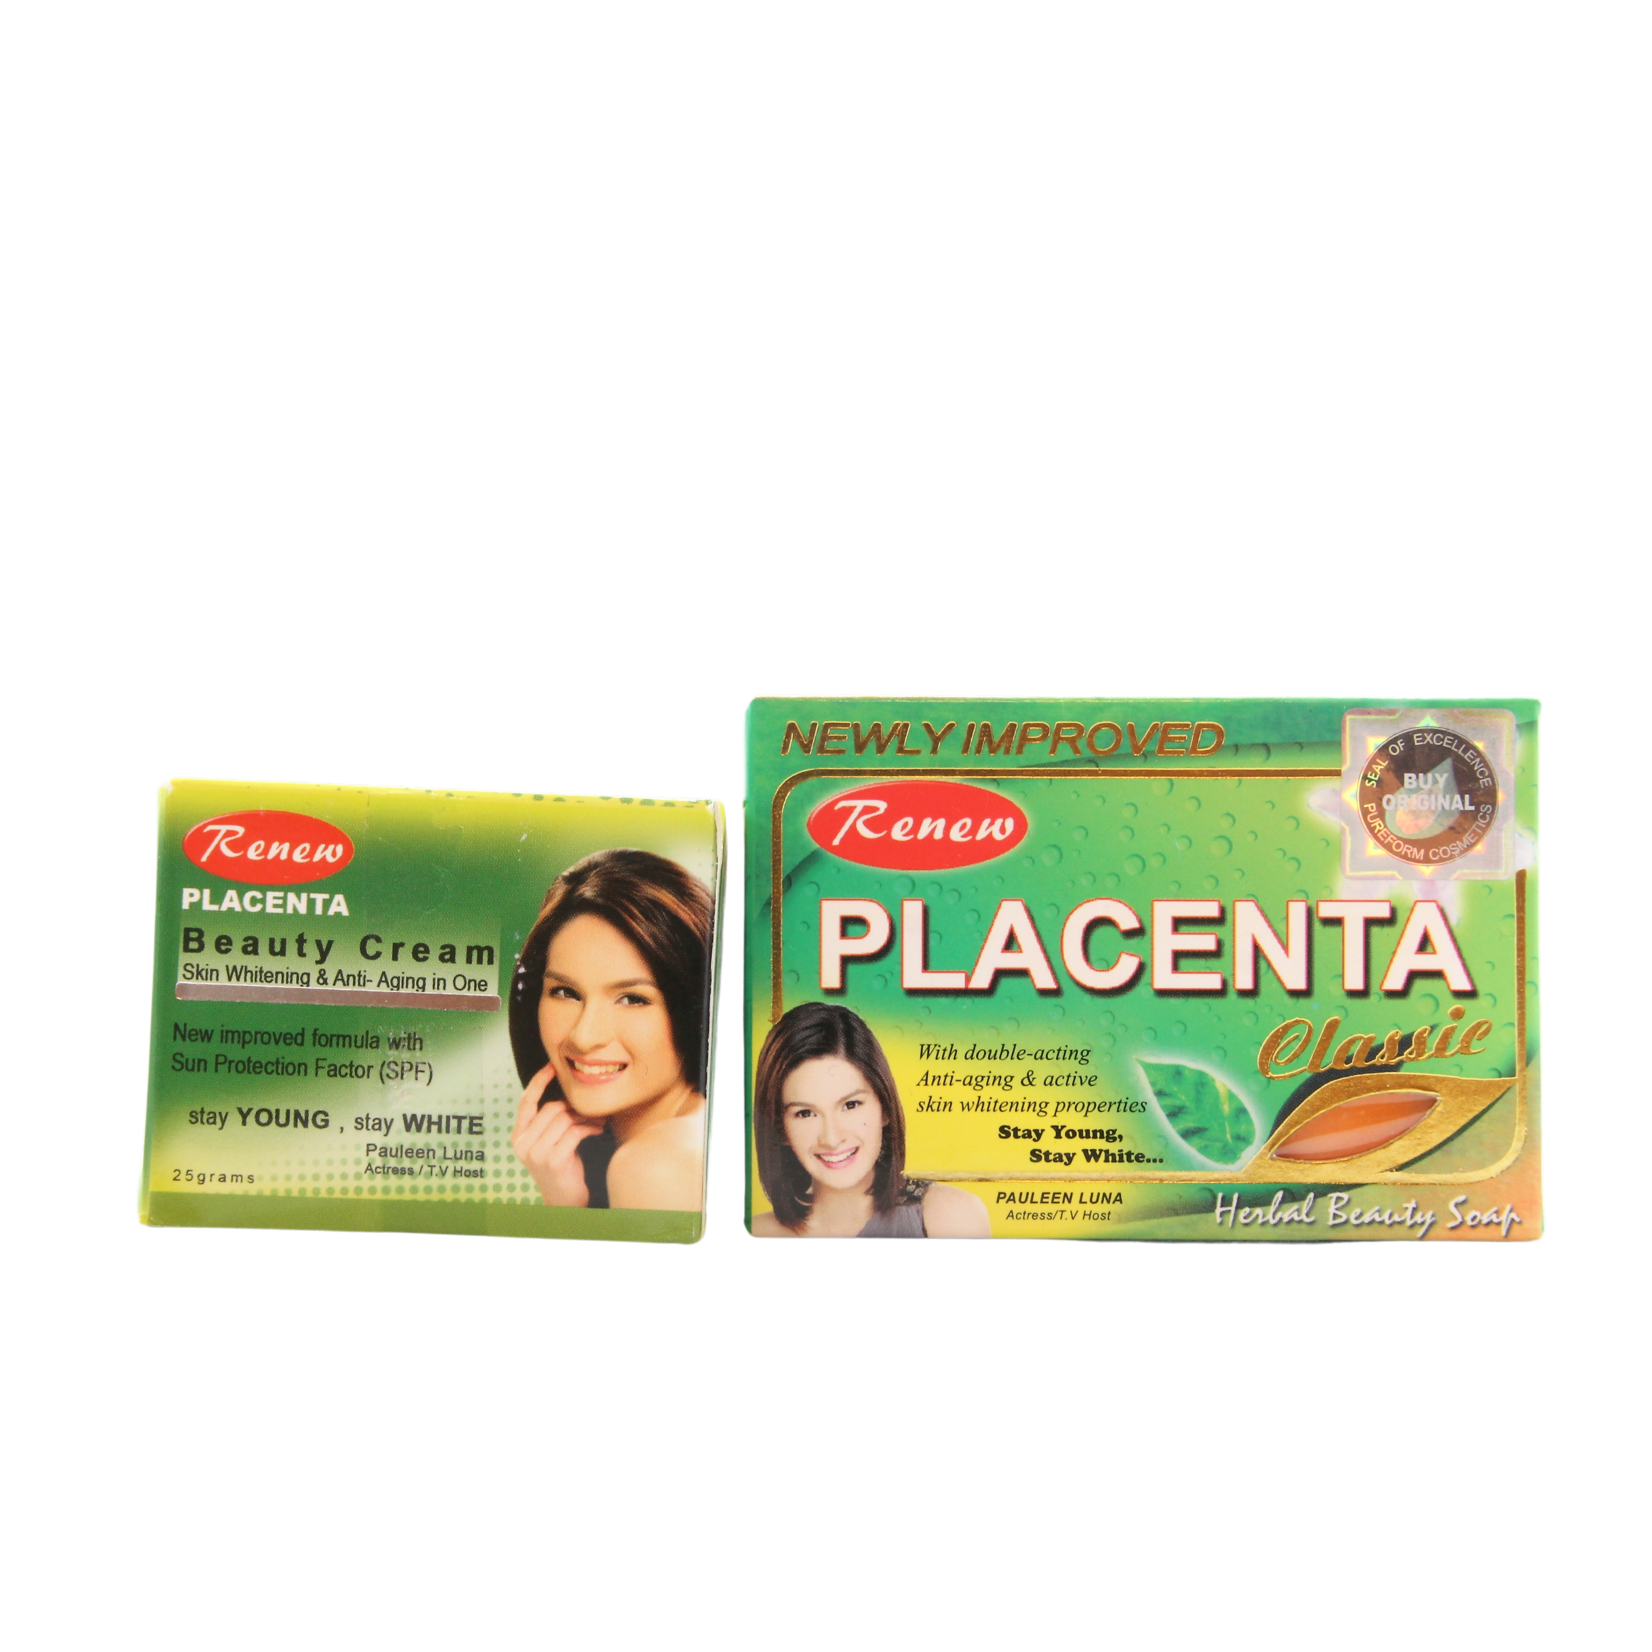 Renew, Vernieuwt en verfrist! Renew Placenta Zeep Classic + Placenta Beauty Cream